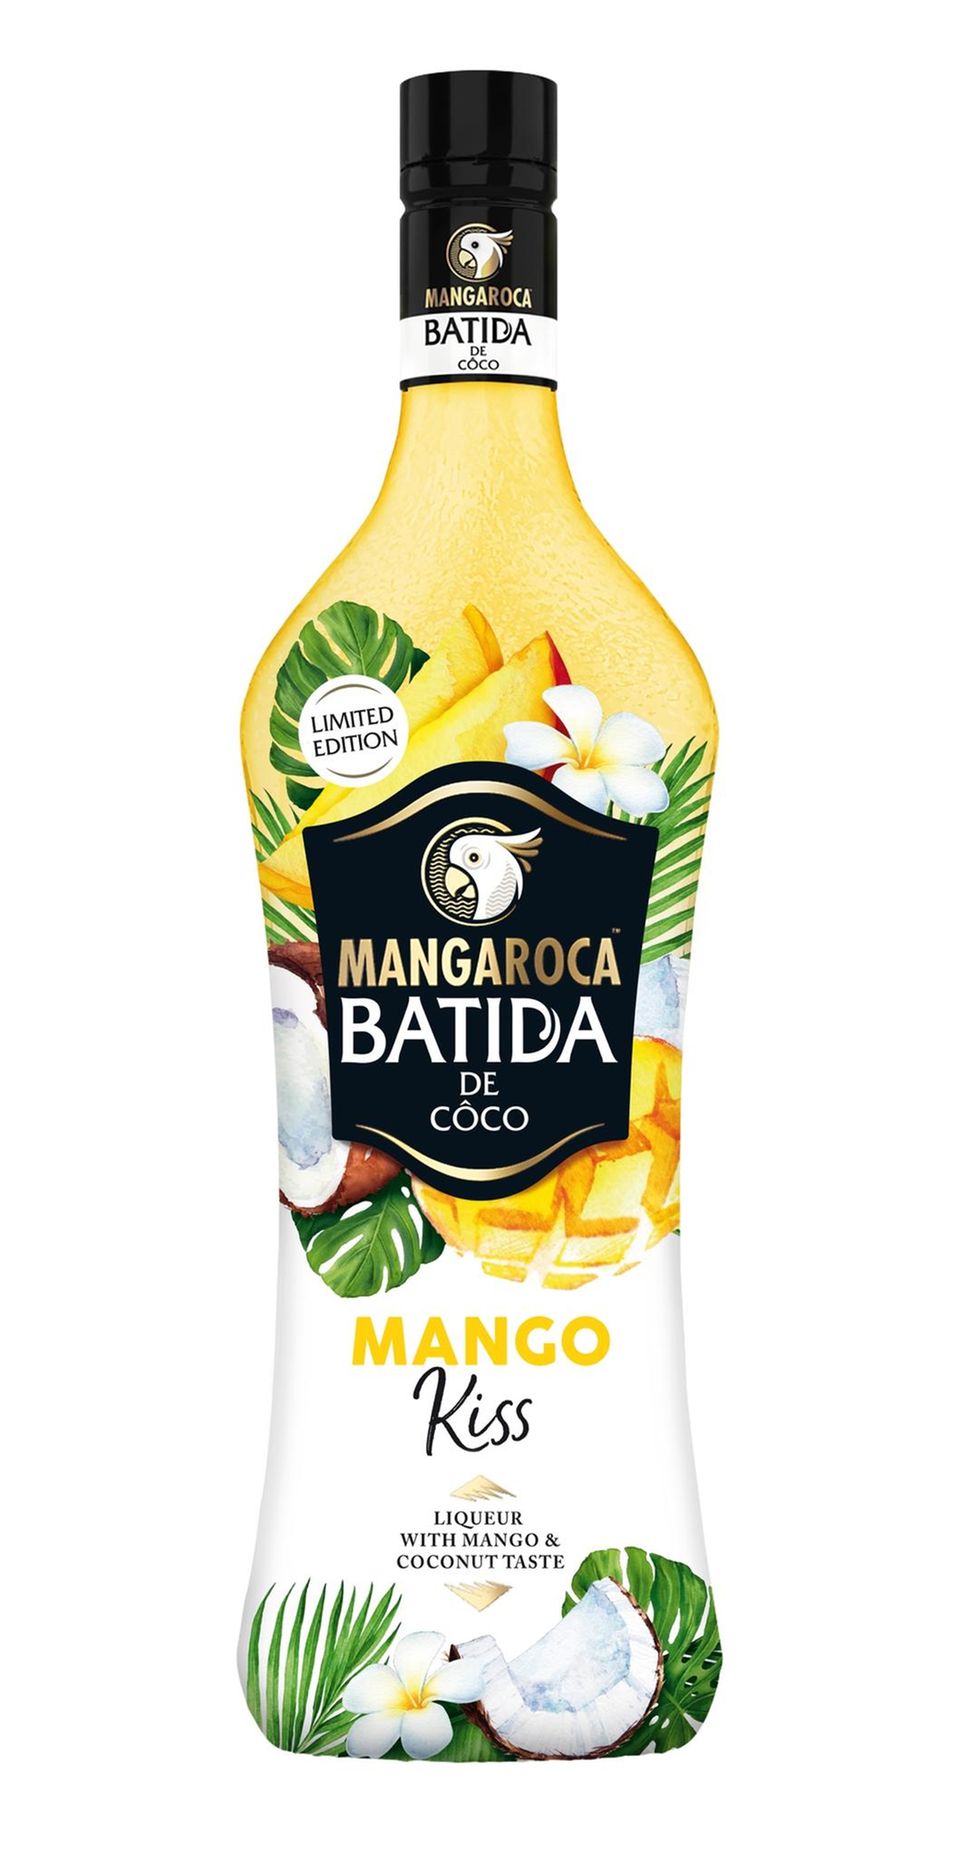 Die limited Edition Mangaroca Batida Mango Kiss ist zurück und sorgt für Sommerfeeling im Glas. Ob pur auf Eis oder im tropischen Cocktail – fruchtig-frischer Genuss ist garantiert. Auch zum Verfeinern von Kuchen und Desserts überzeugt die Mischung aus cremigem Kokoslikör und süßer Mango – ein echter Geheimtipp! Der Trend-Likör in der dekorativen 0,7-Liter-Flasche enthält 16 Prozent Alkohol und kostet 9,99 Euro UVP.